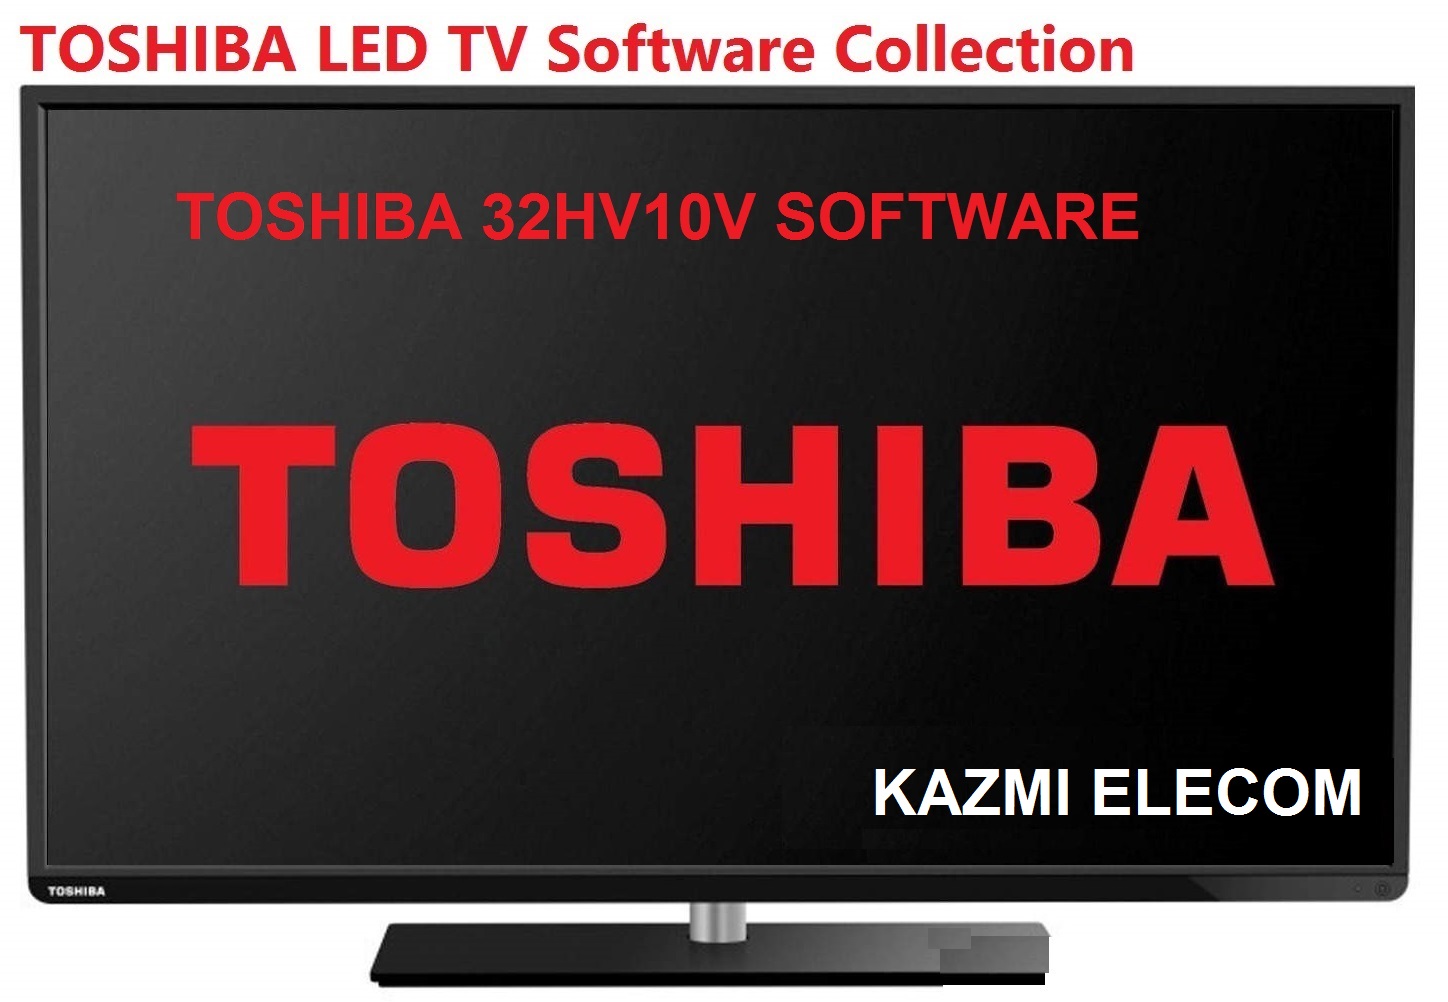 Toshiba 32Hv10V